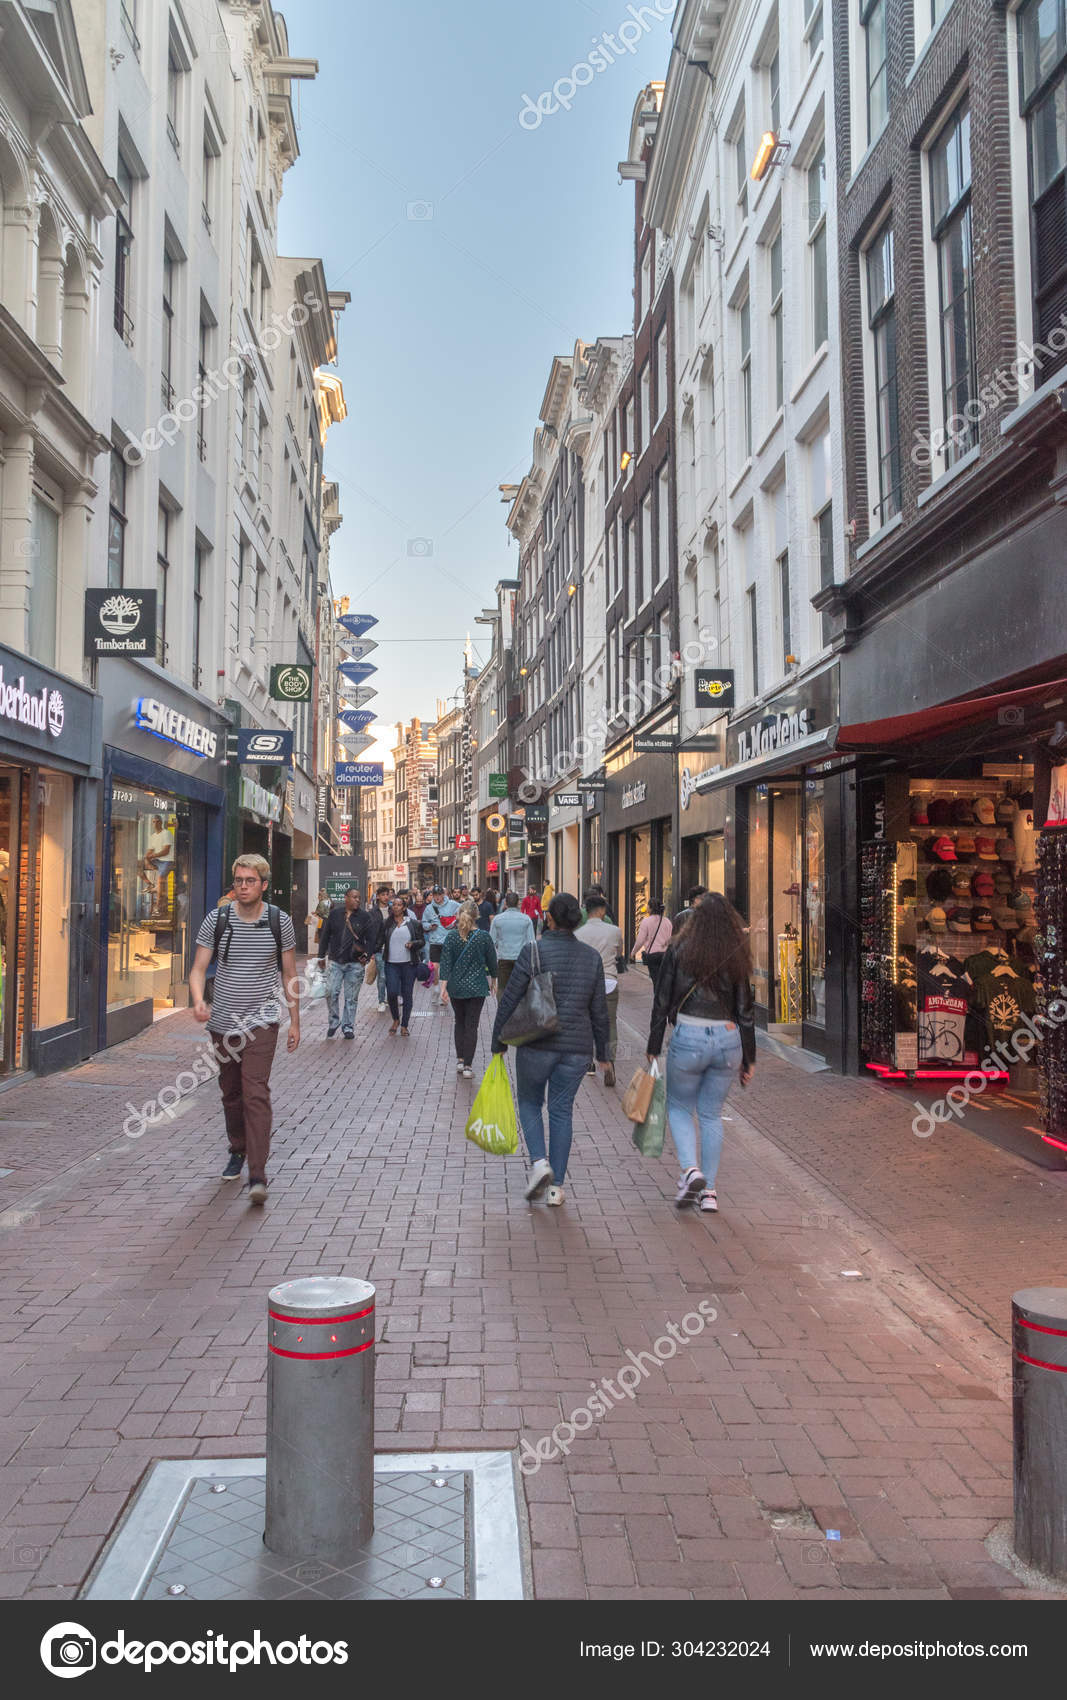 Pople aan de Kalverstraat. is drukke winkelstraat van Amsterdam. – Redactionele stockfoto © #304232024